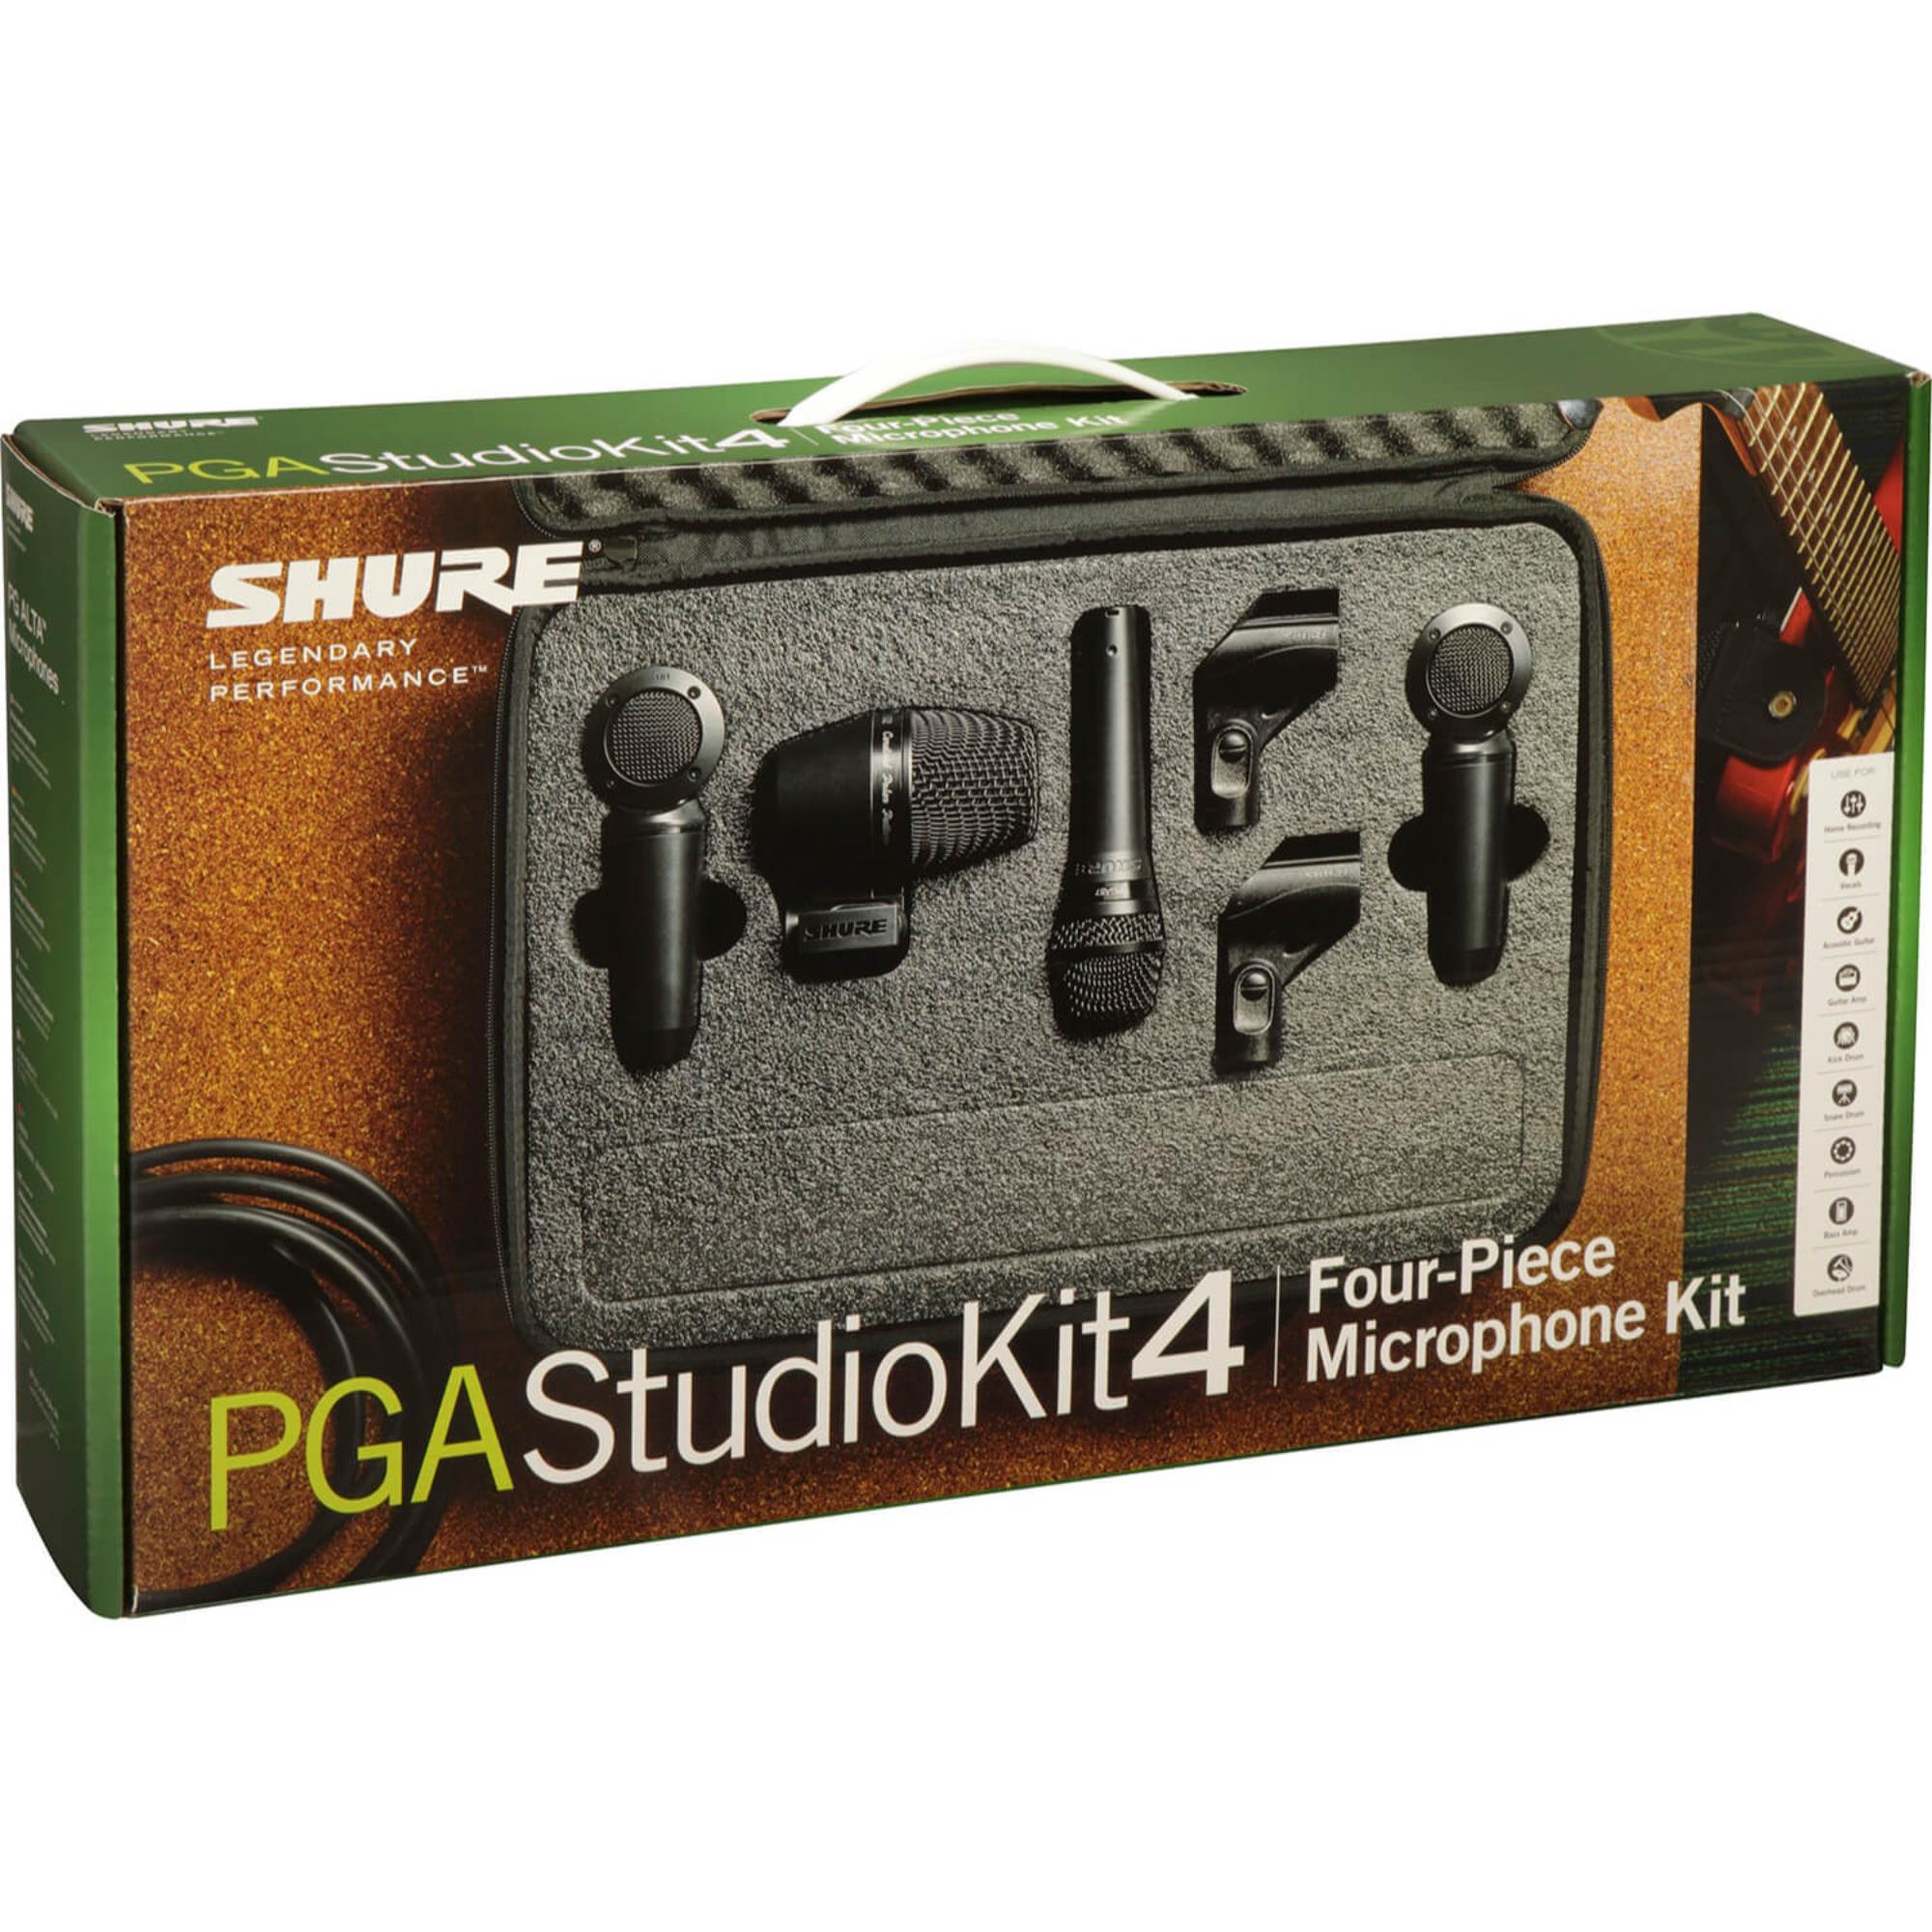 Shure-PGA-STUDIO-KIT-4-sku-19400854